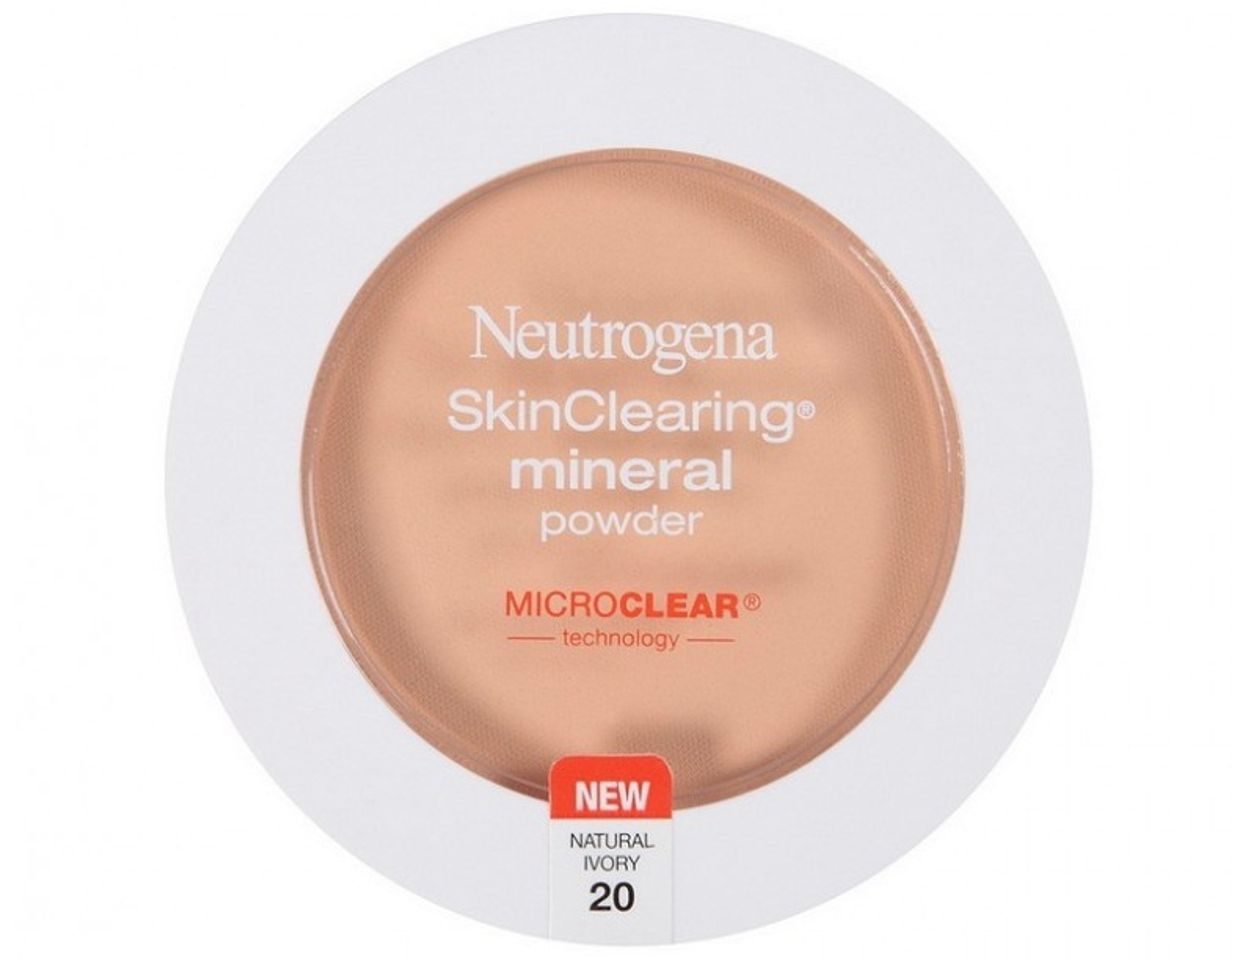 Phấn nền khoáng Neutrogena Skin Clearing Mineral Powder với công nghệ Microclear cho các hạt phấn nhỏ mịn dành riêng cho da mụn